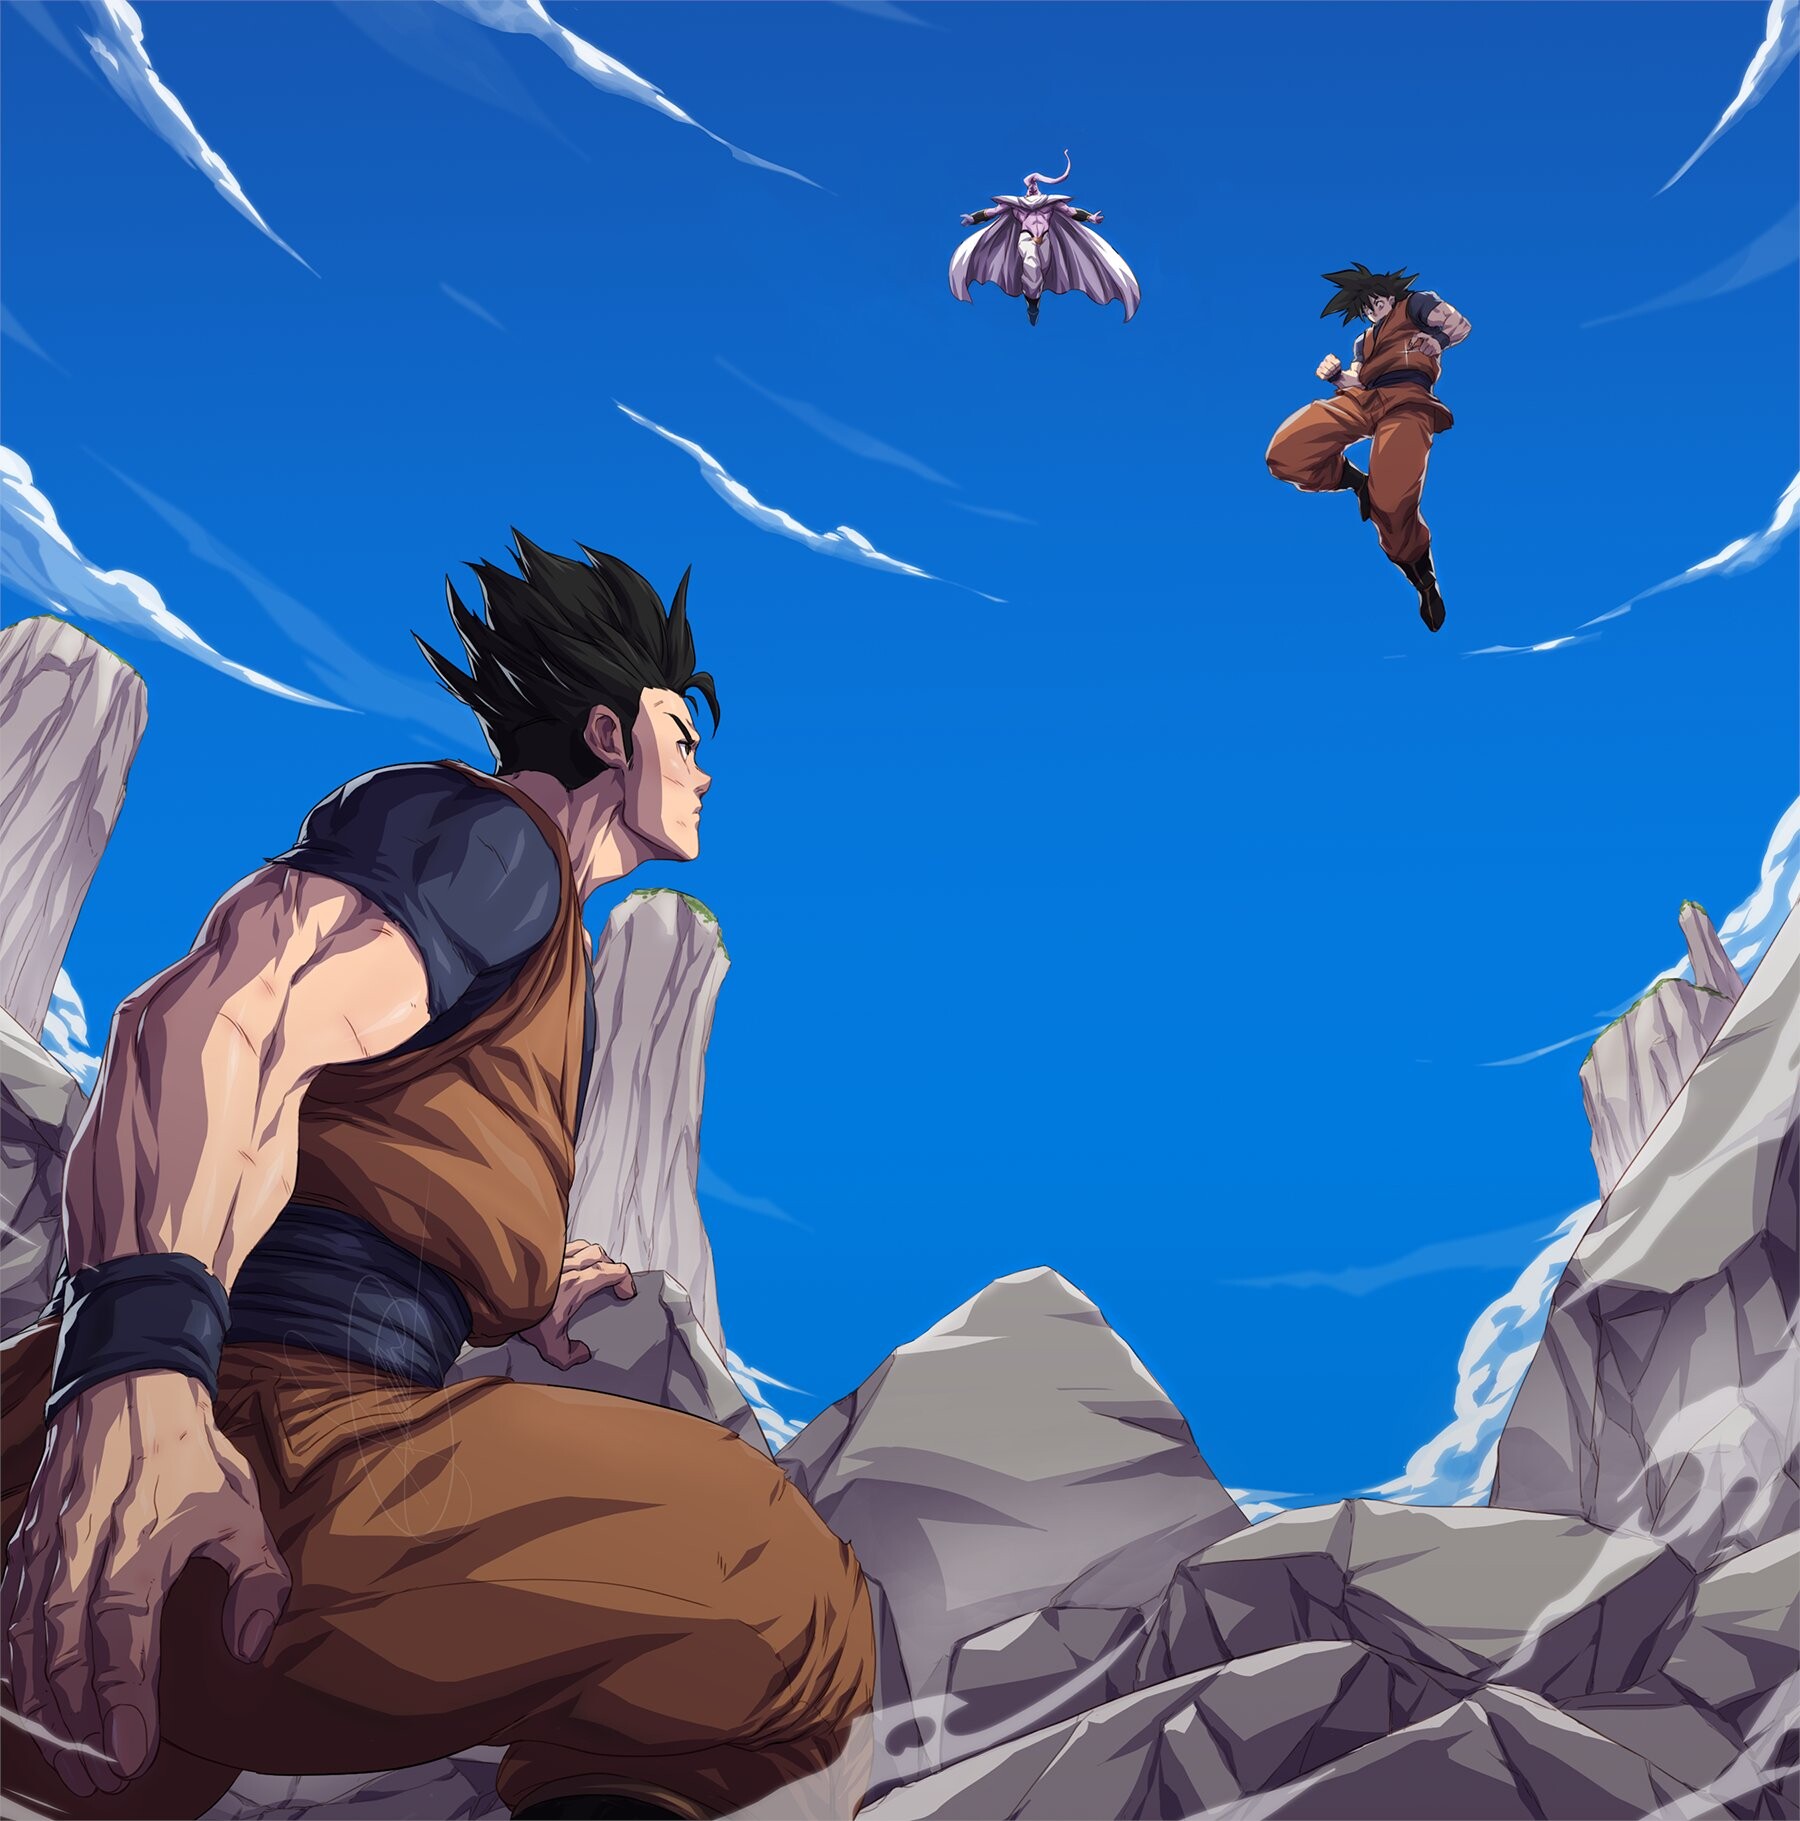 ArtStation - Gohan and Goku Vs Majin Buu